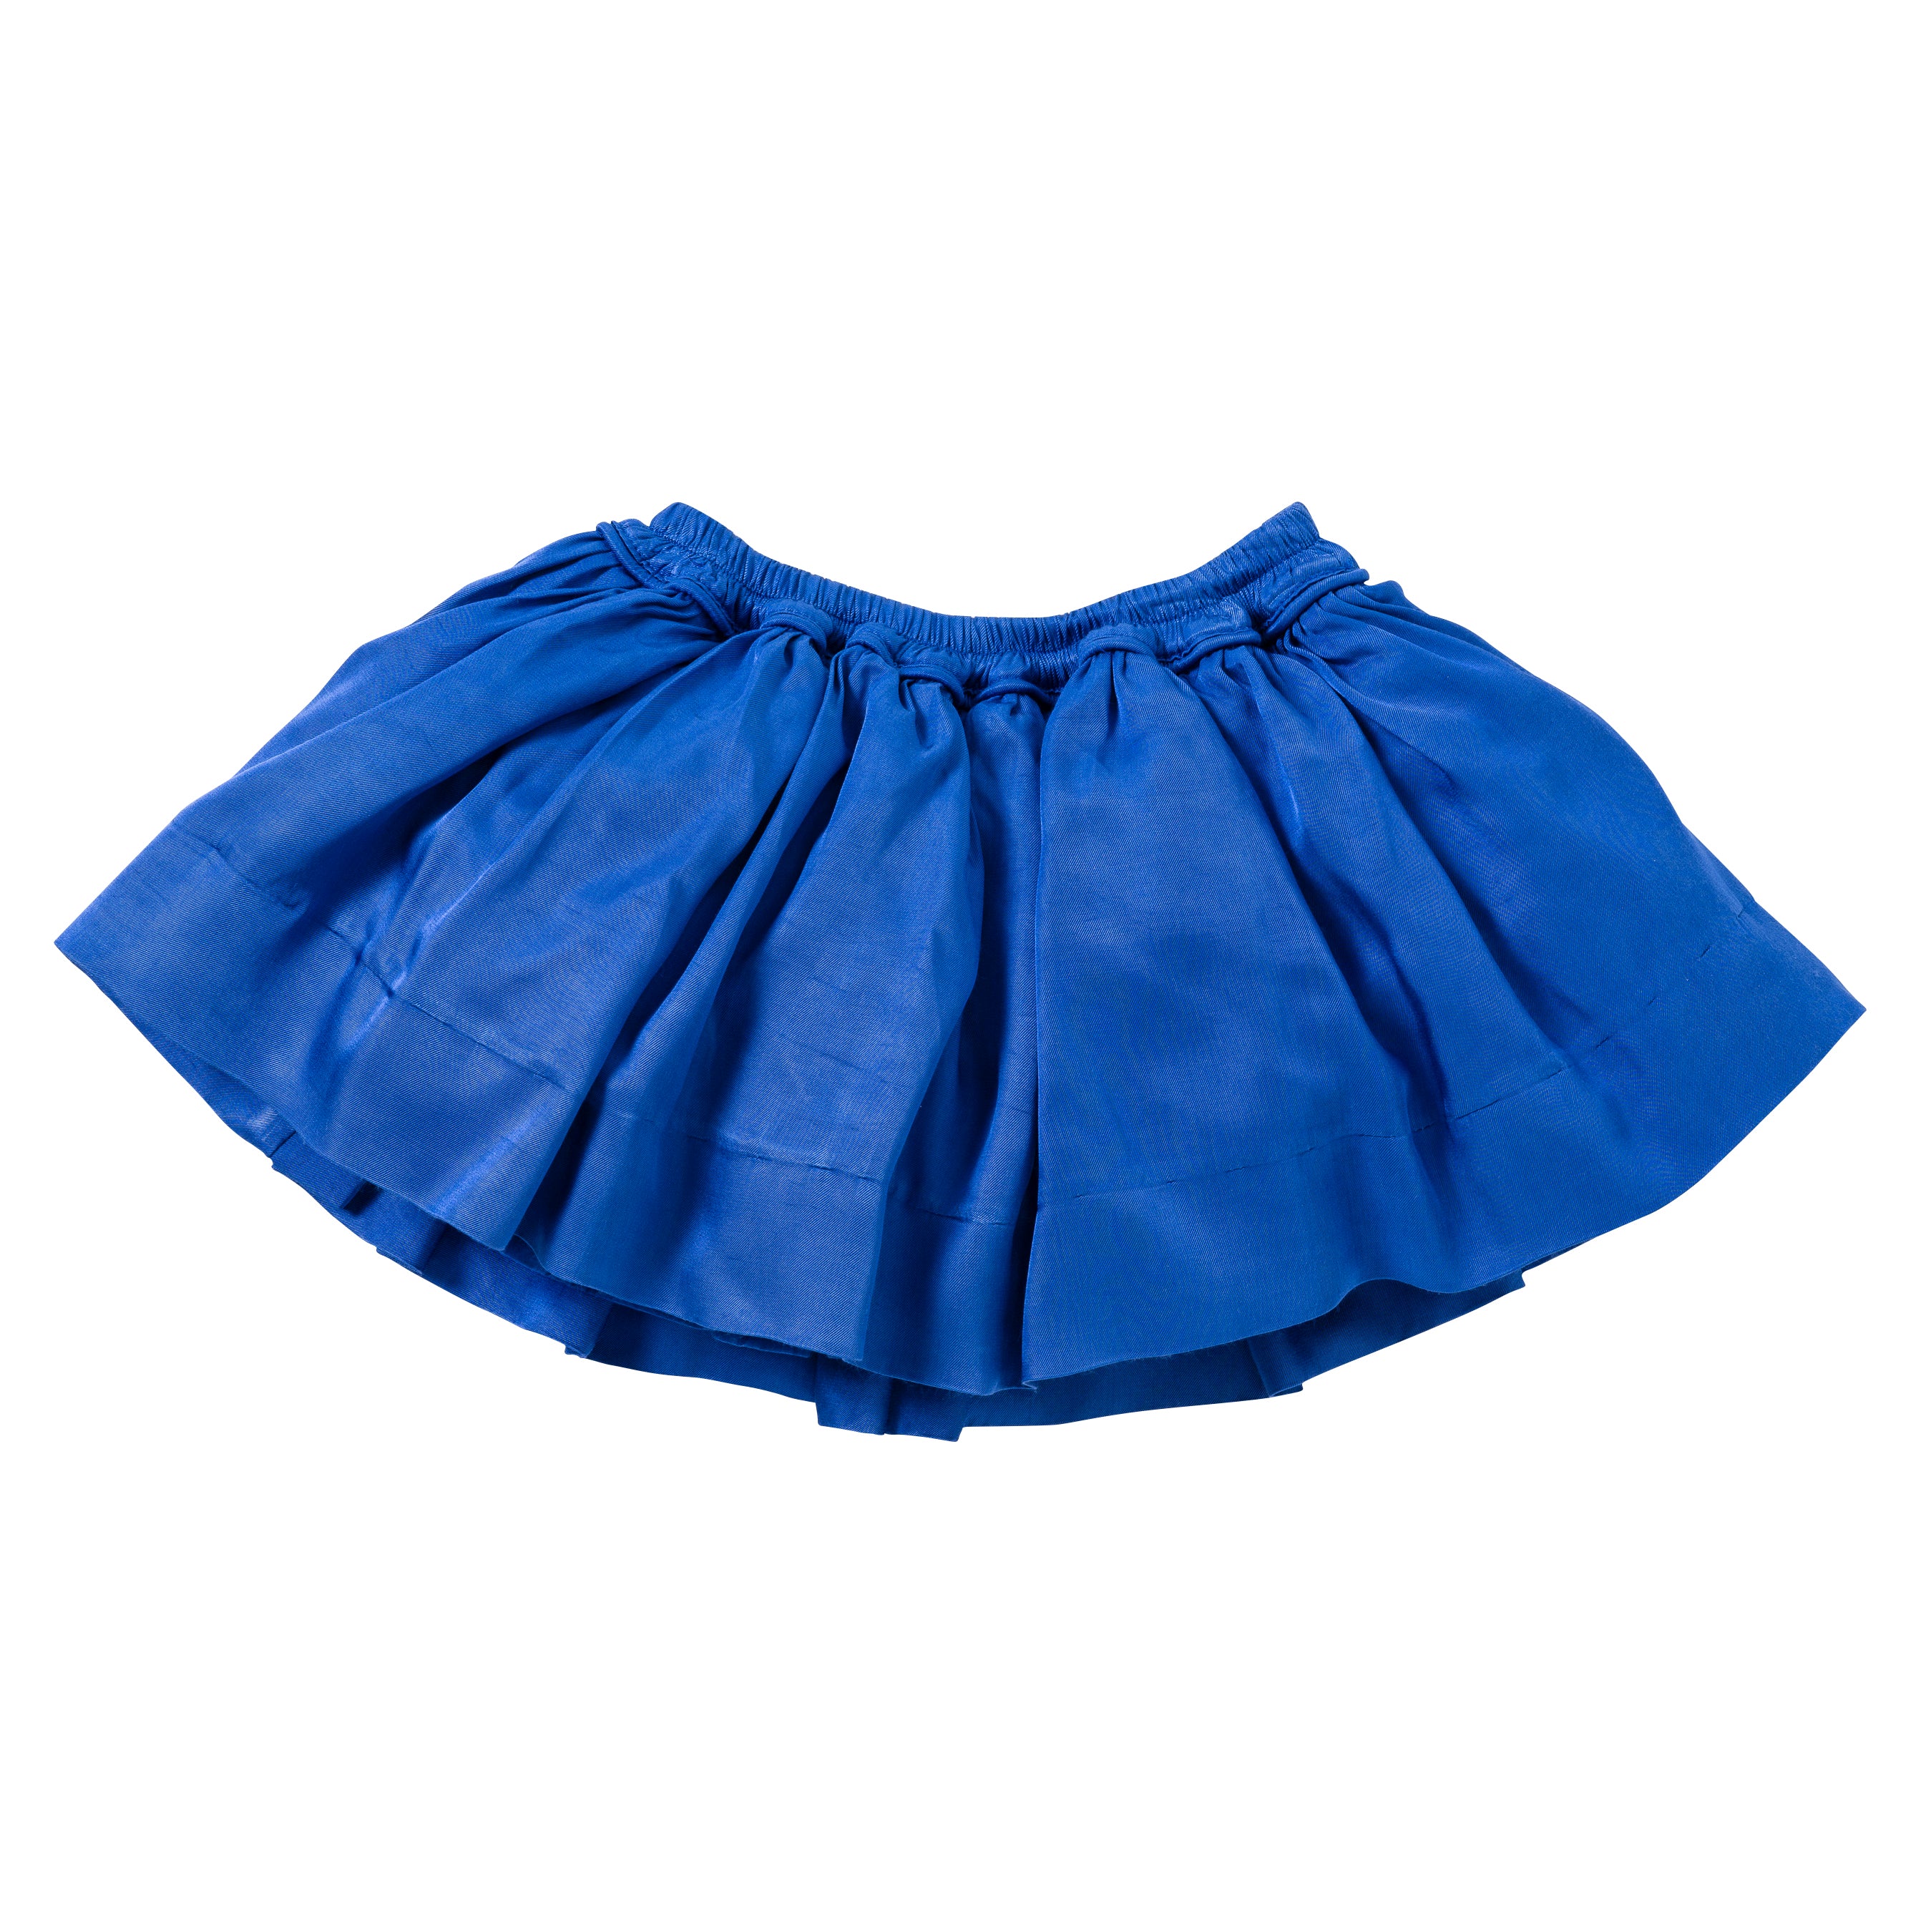 Pocket Skirt in Blue